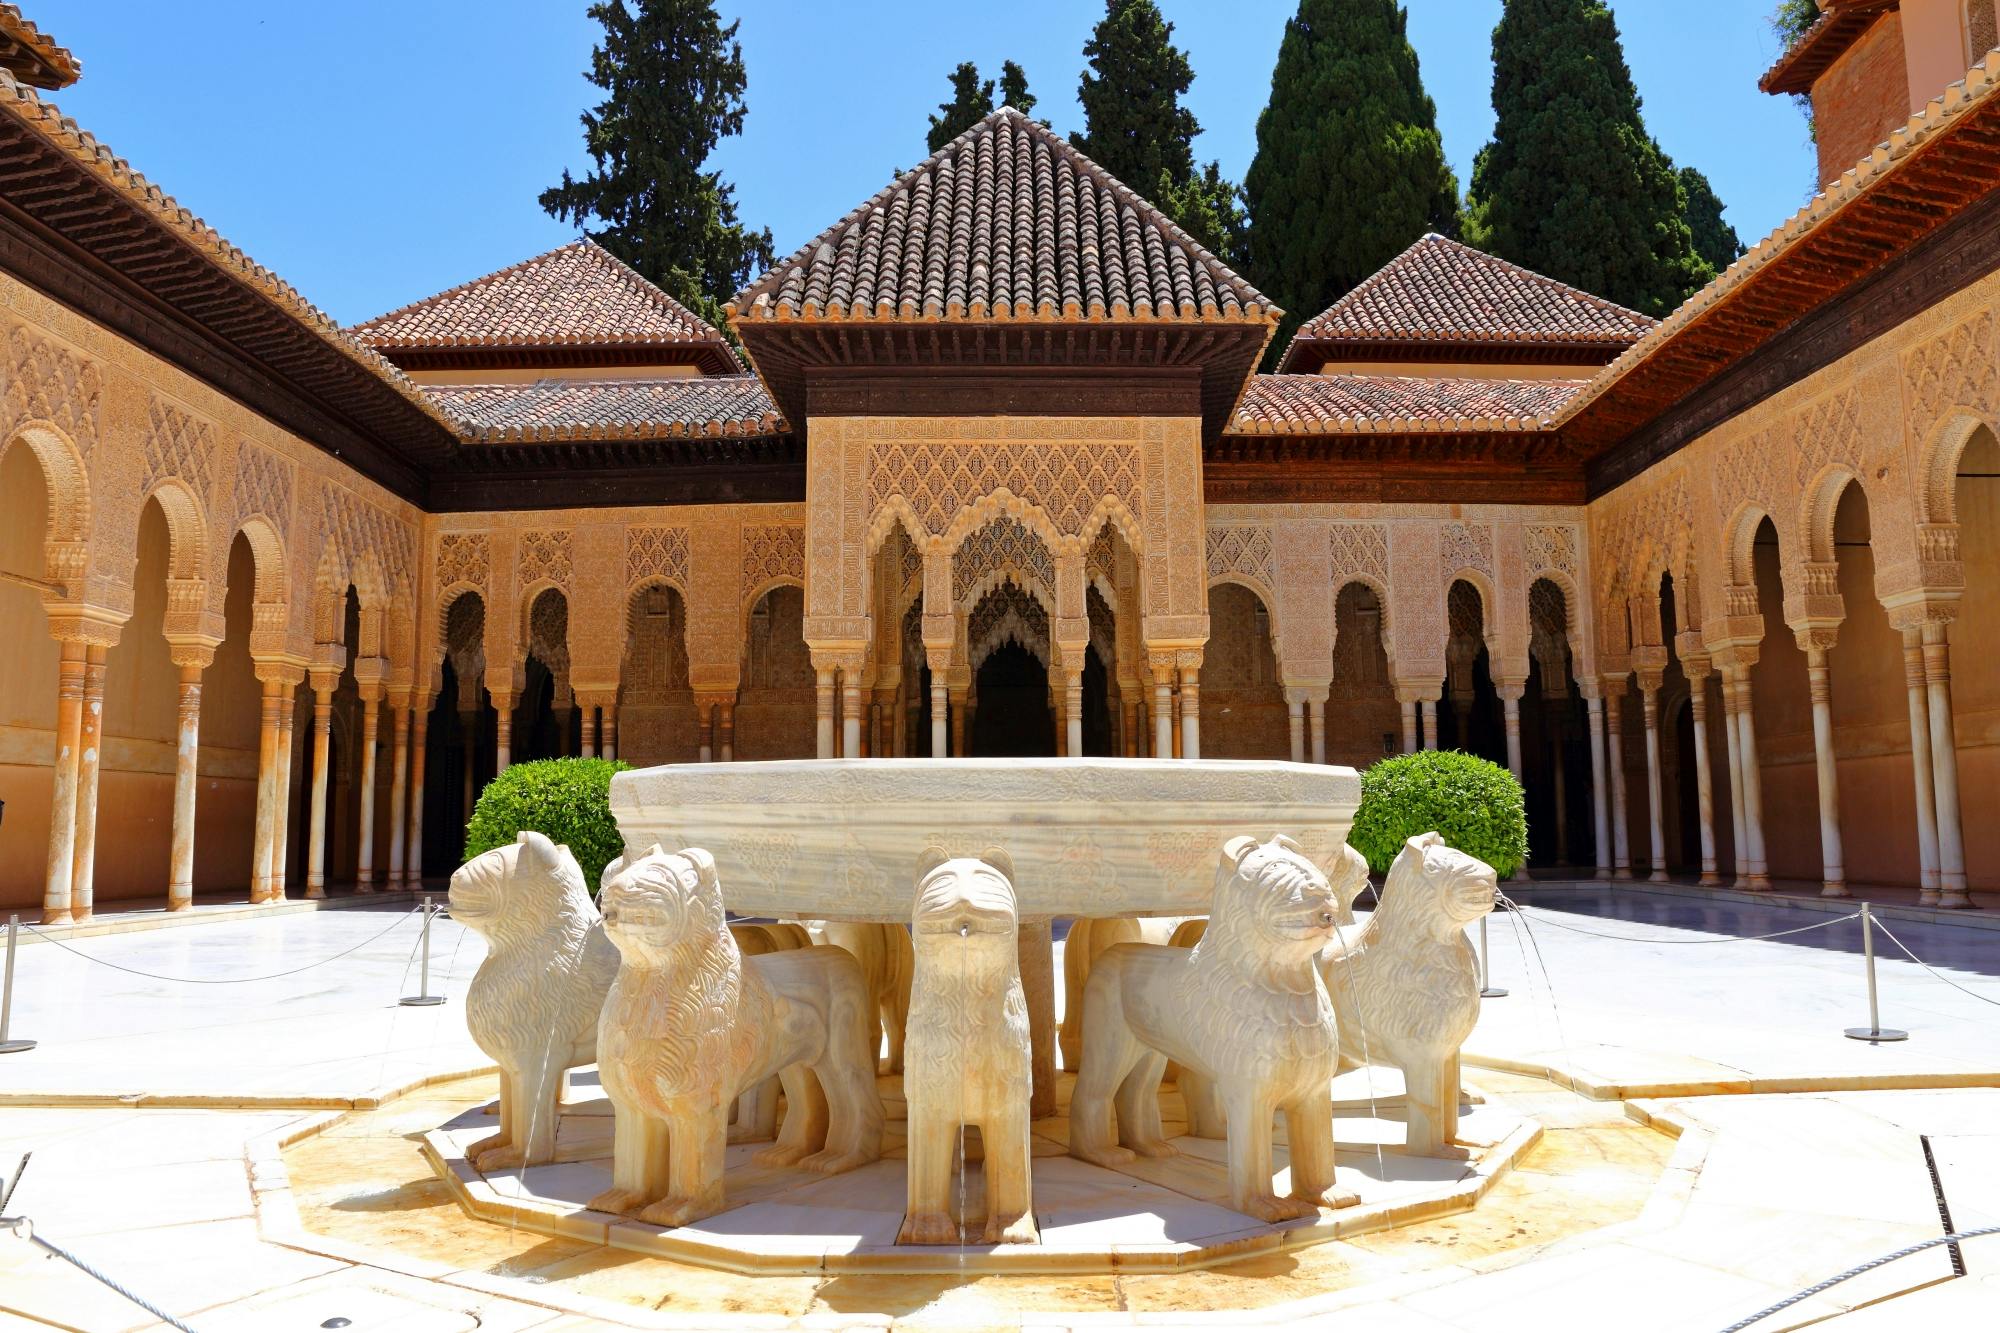 Pełny dostęp do Alhambry z biletami bez kolejki i wycieczką z przewodnikiem w języku angielskim